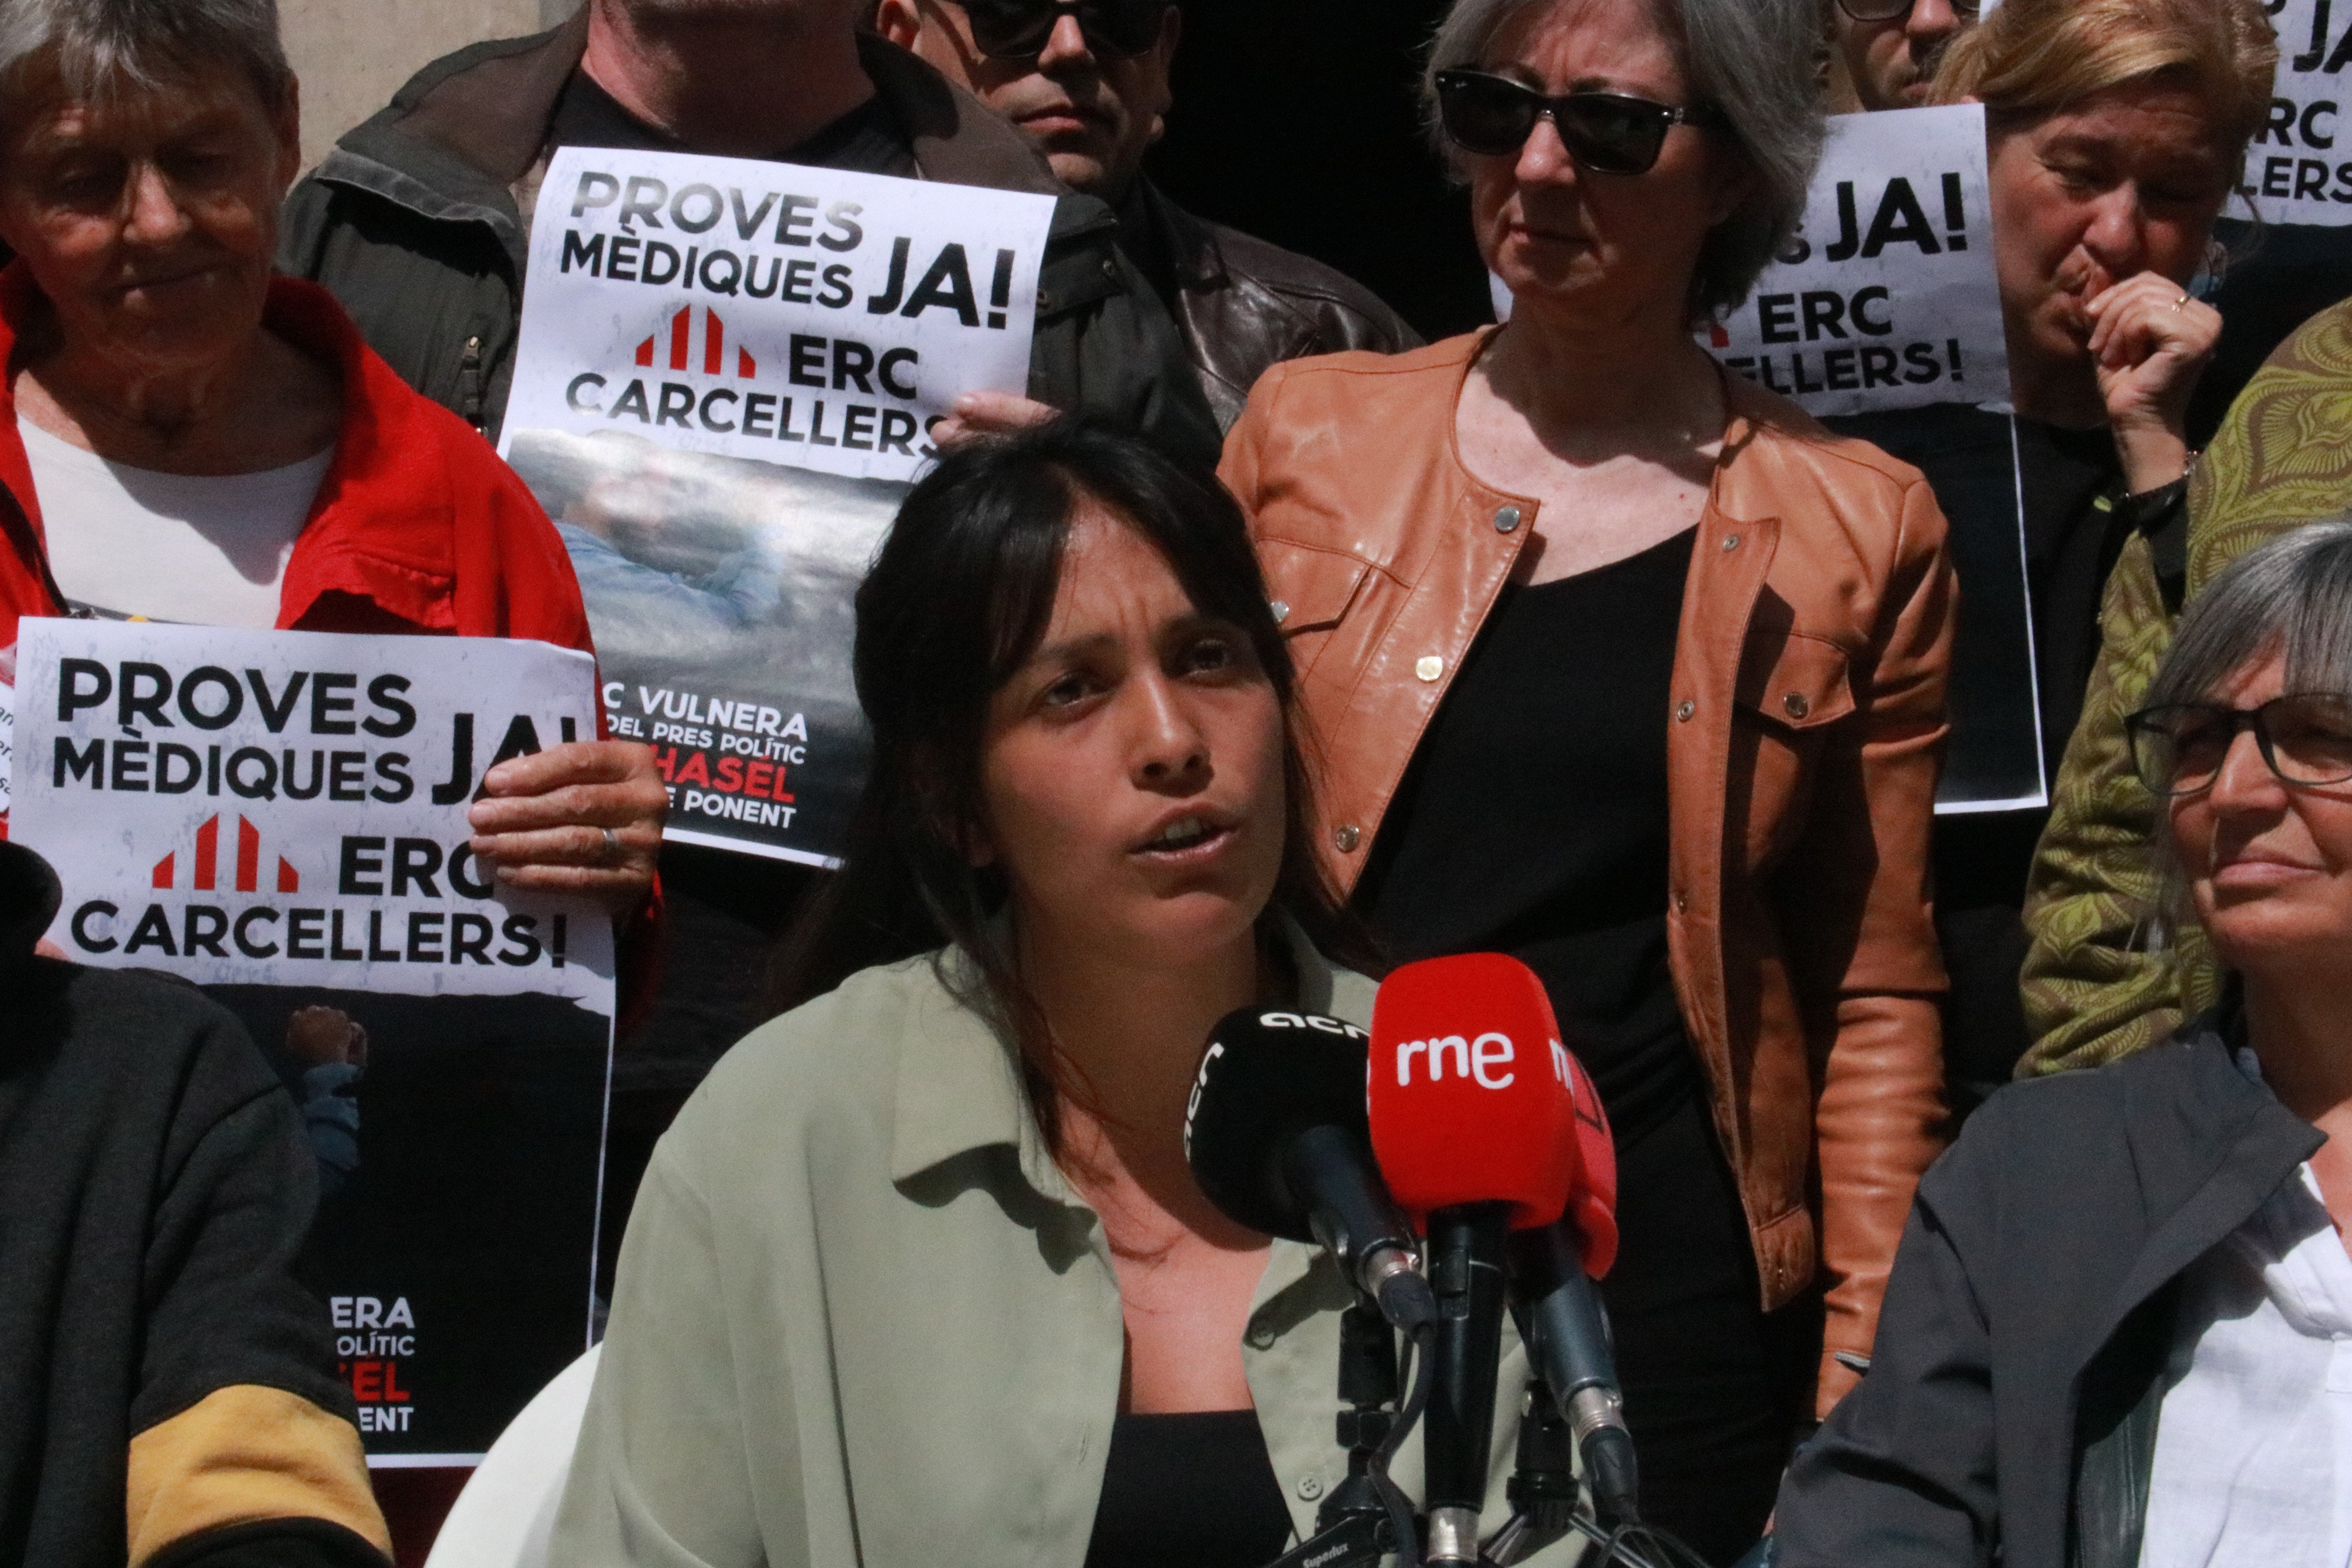 Pablo Hasél es querella contra el conseller Joan Ignasi Elena: "ERC carcellers!"